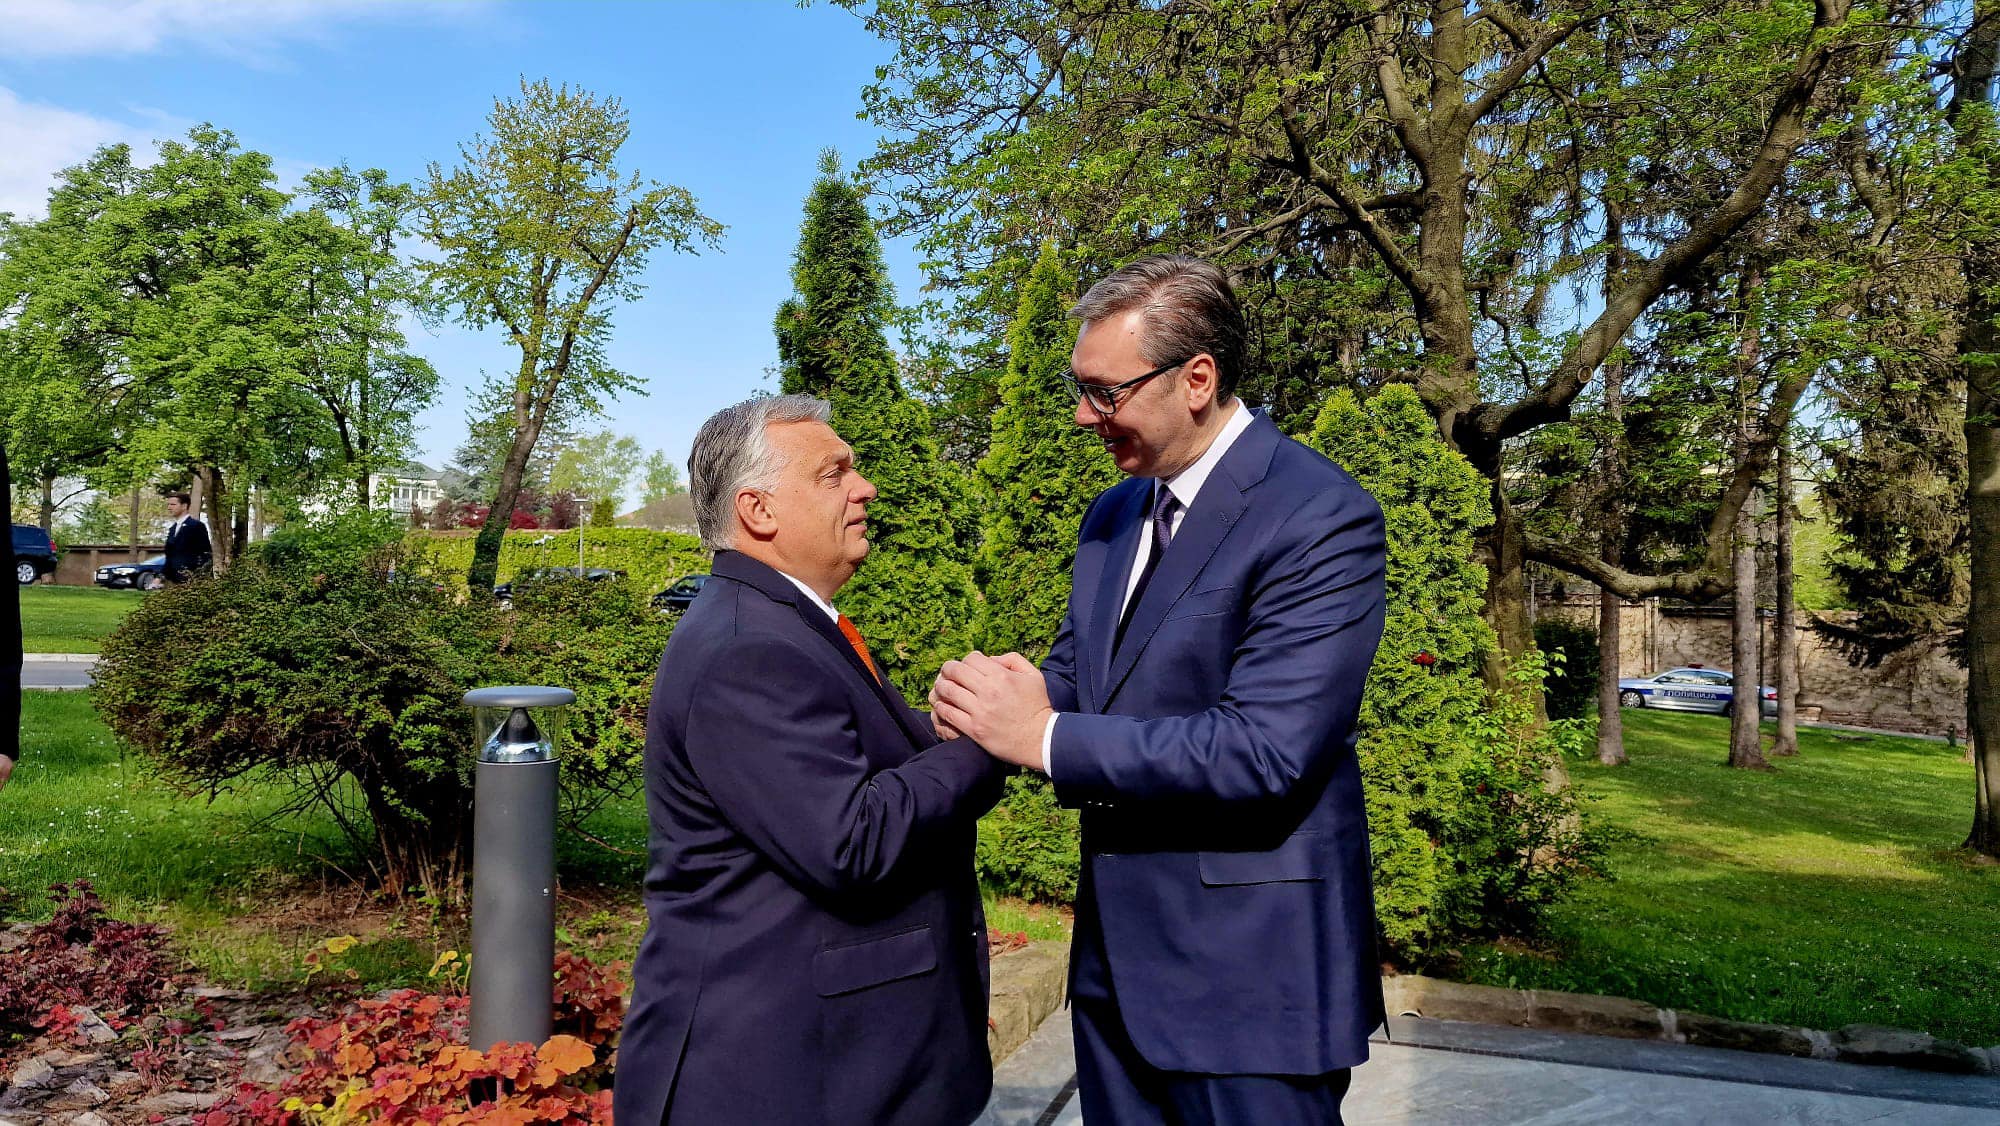 Der serbische Präsident folgt der Bitte des ungarischen Ministerpräsidenten, Kosovo-Polizisten freizulassen